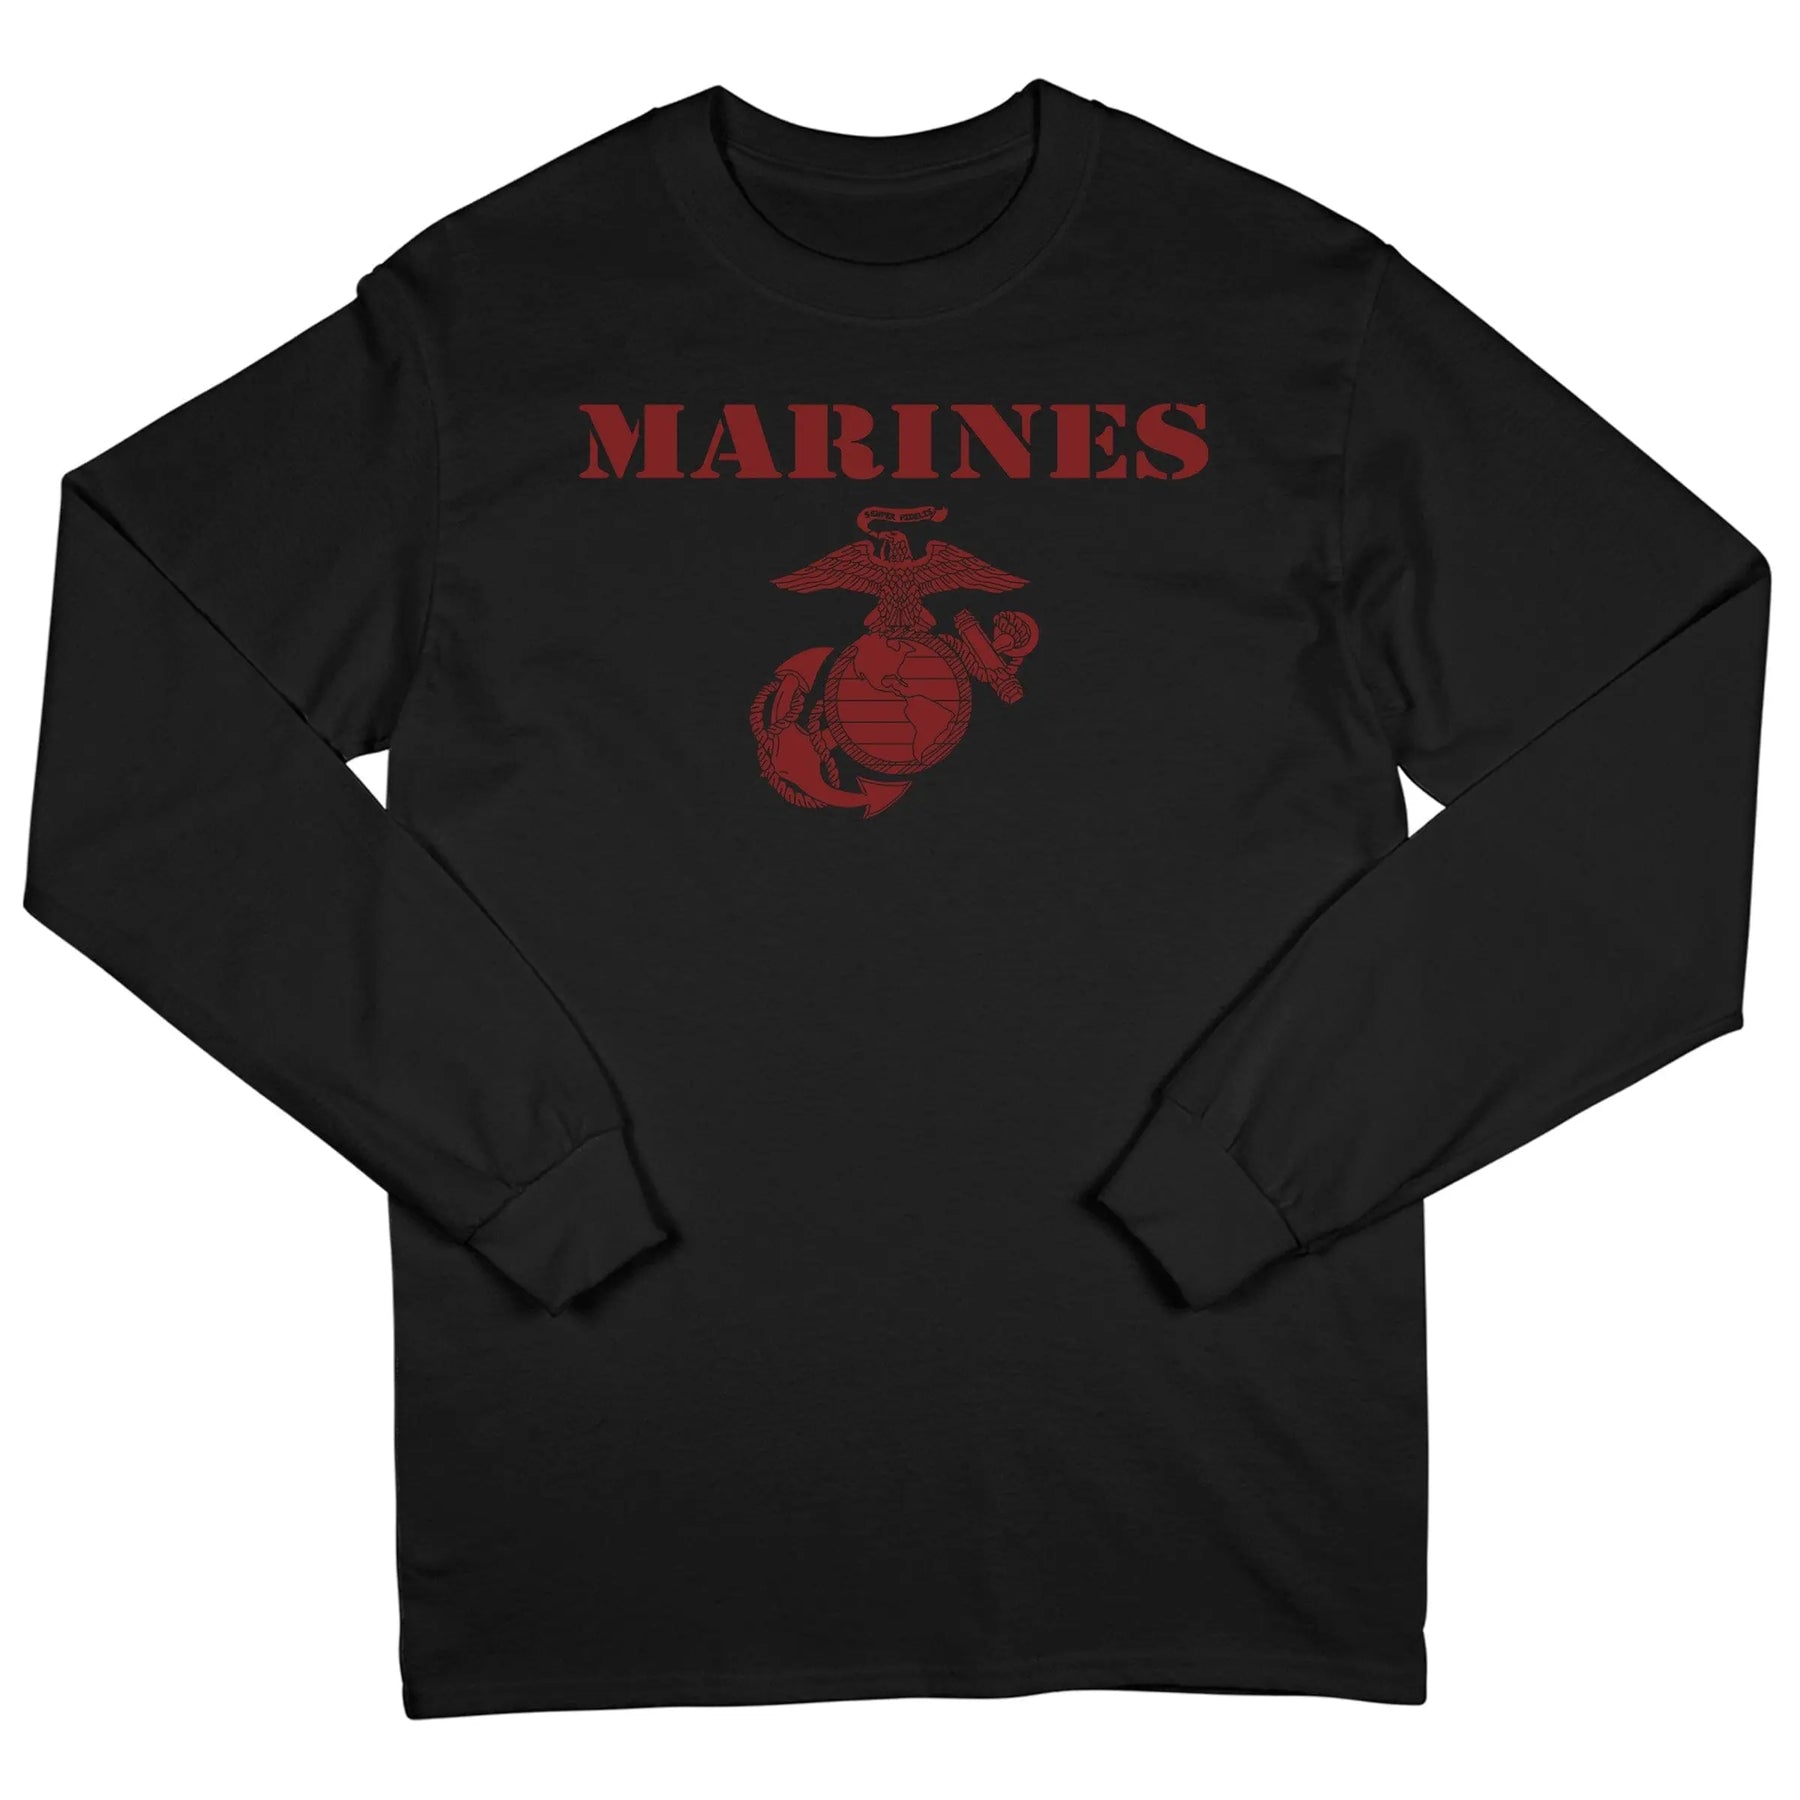 Red on Black Vintage Marines Long Sleeve Tee